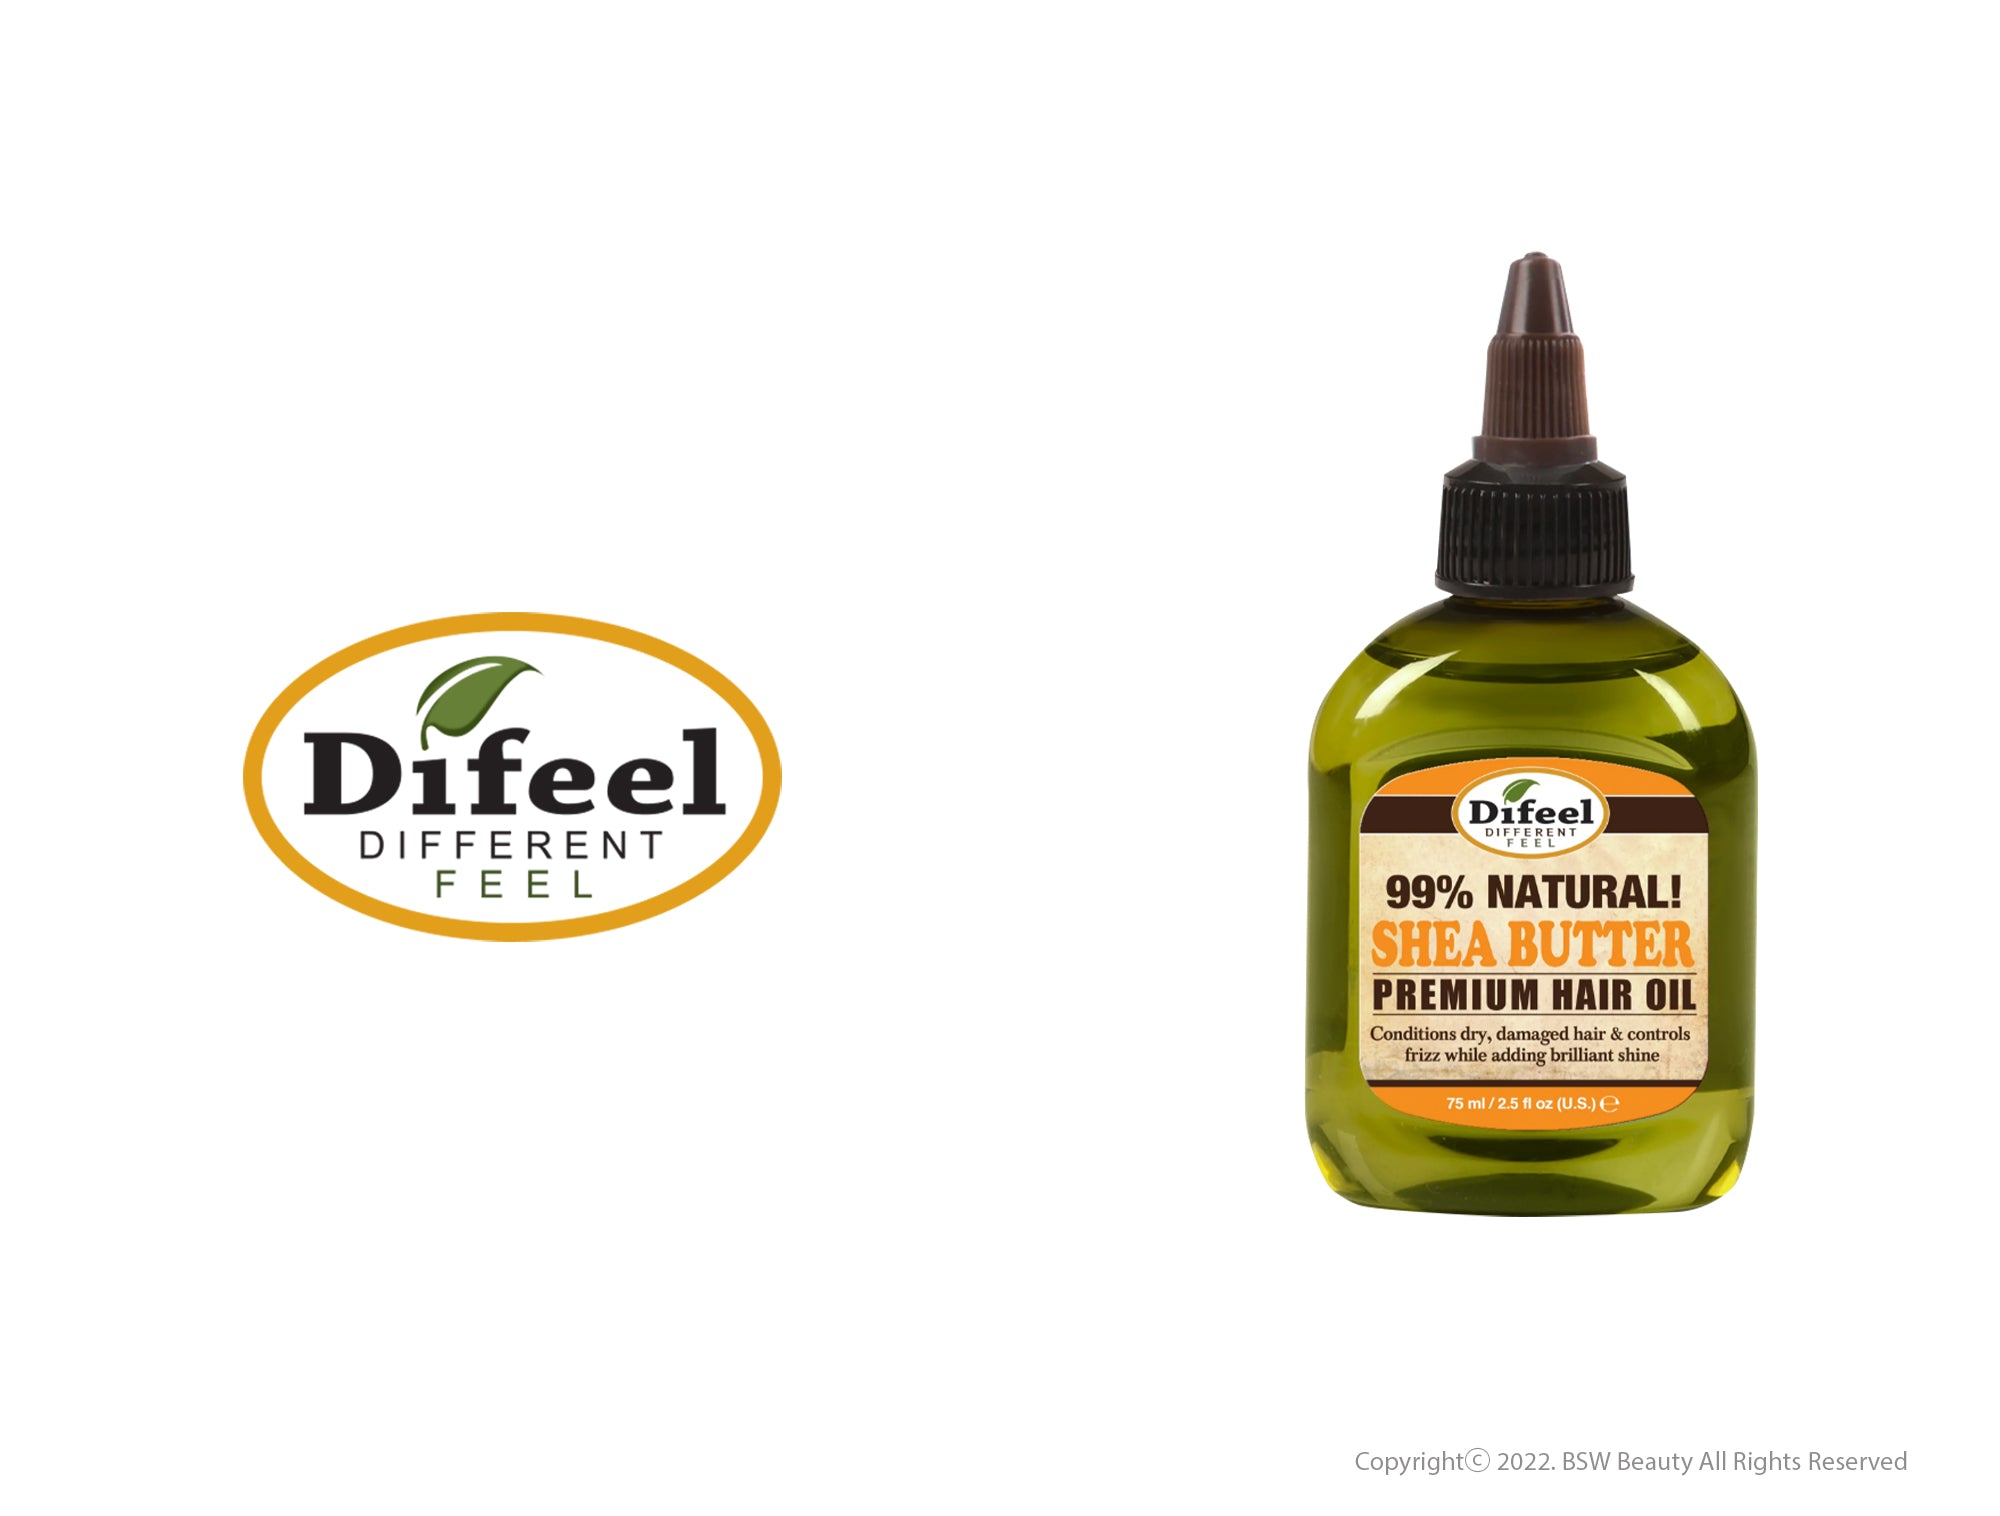 DIFEEL 99% NATURAL SHEA BUTTER PREMIUM HAIR OIL2.5oz